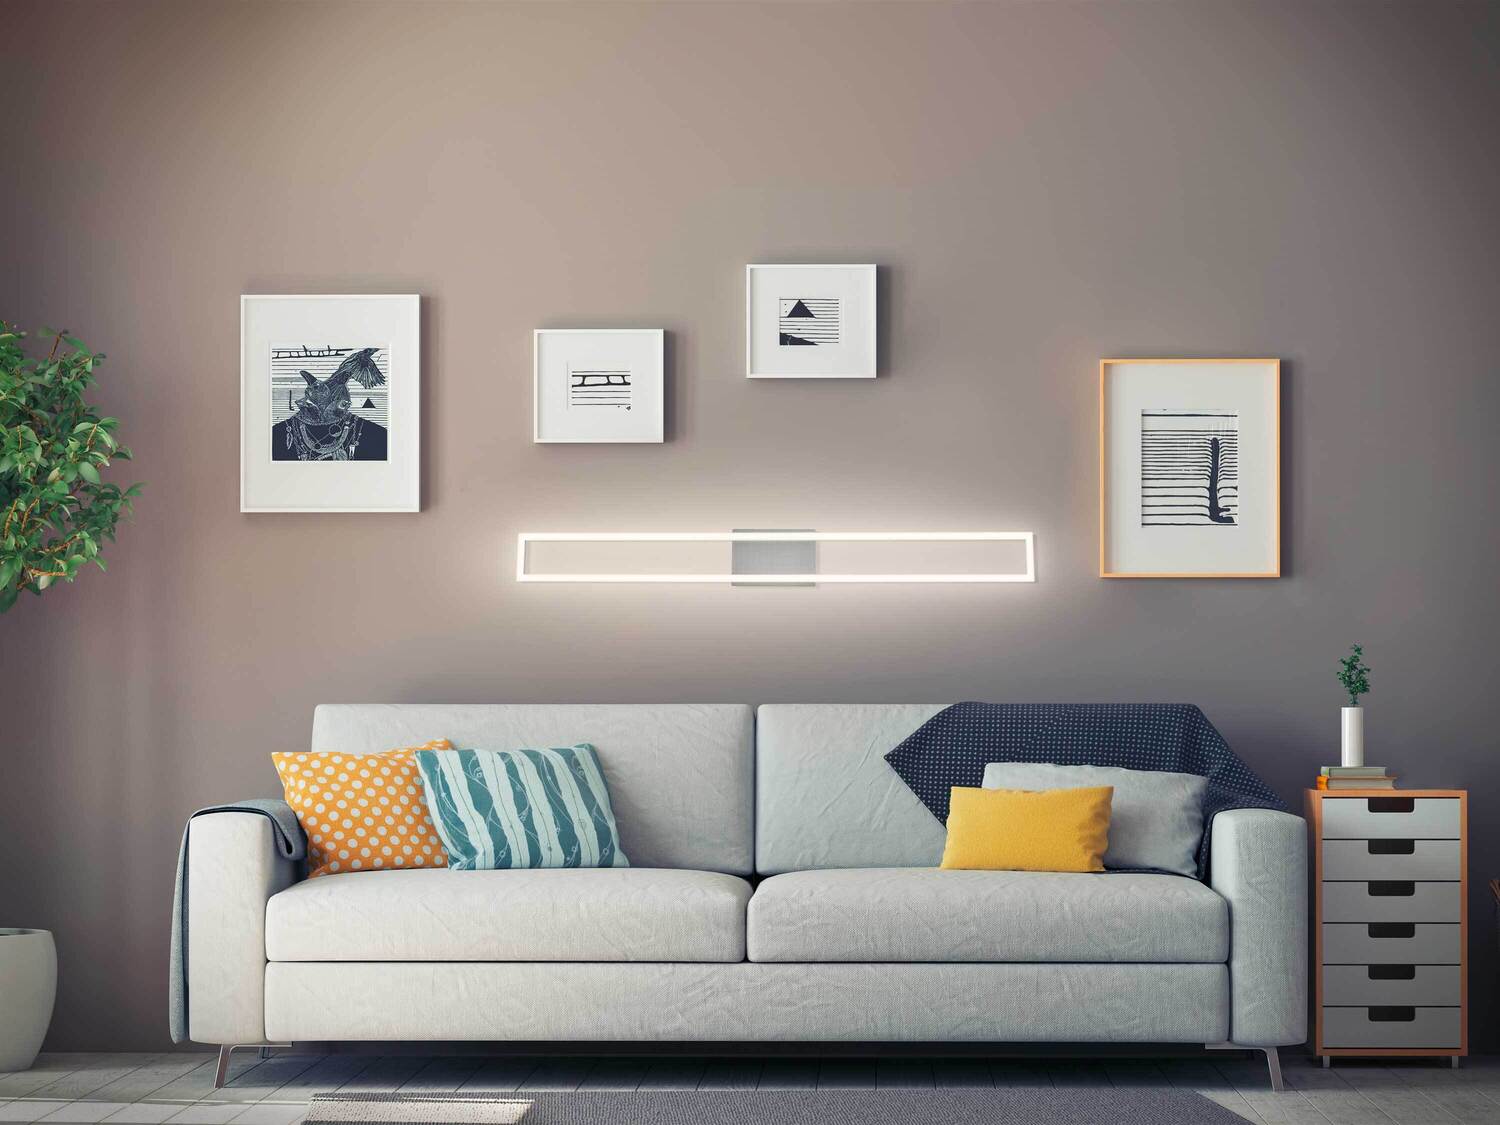 Lampa LED Livarno, cena 129,00 PLN 
- do montażu na ścianie lub sufcie
- barwa ...